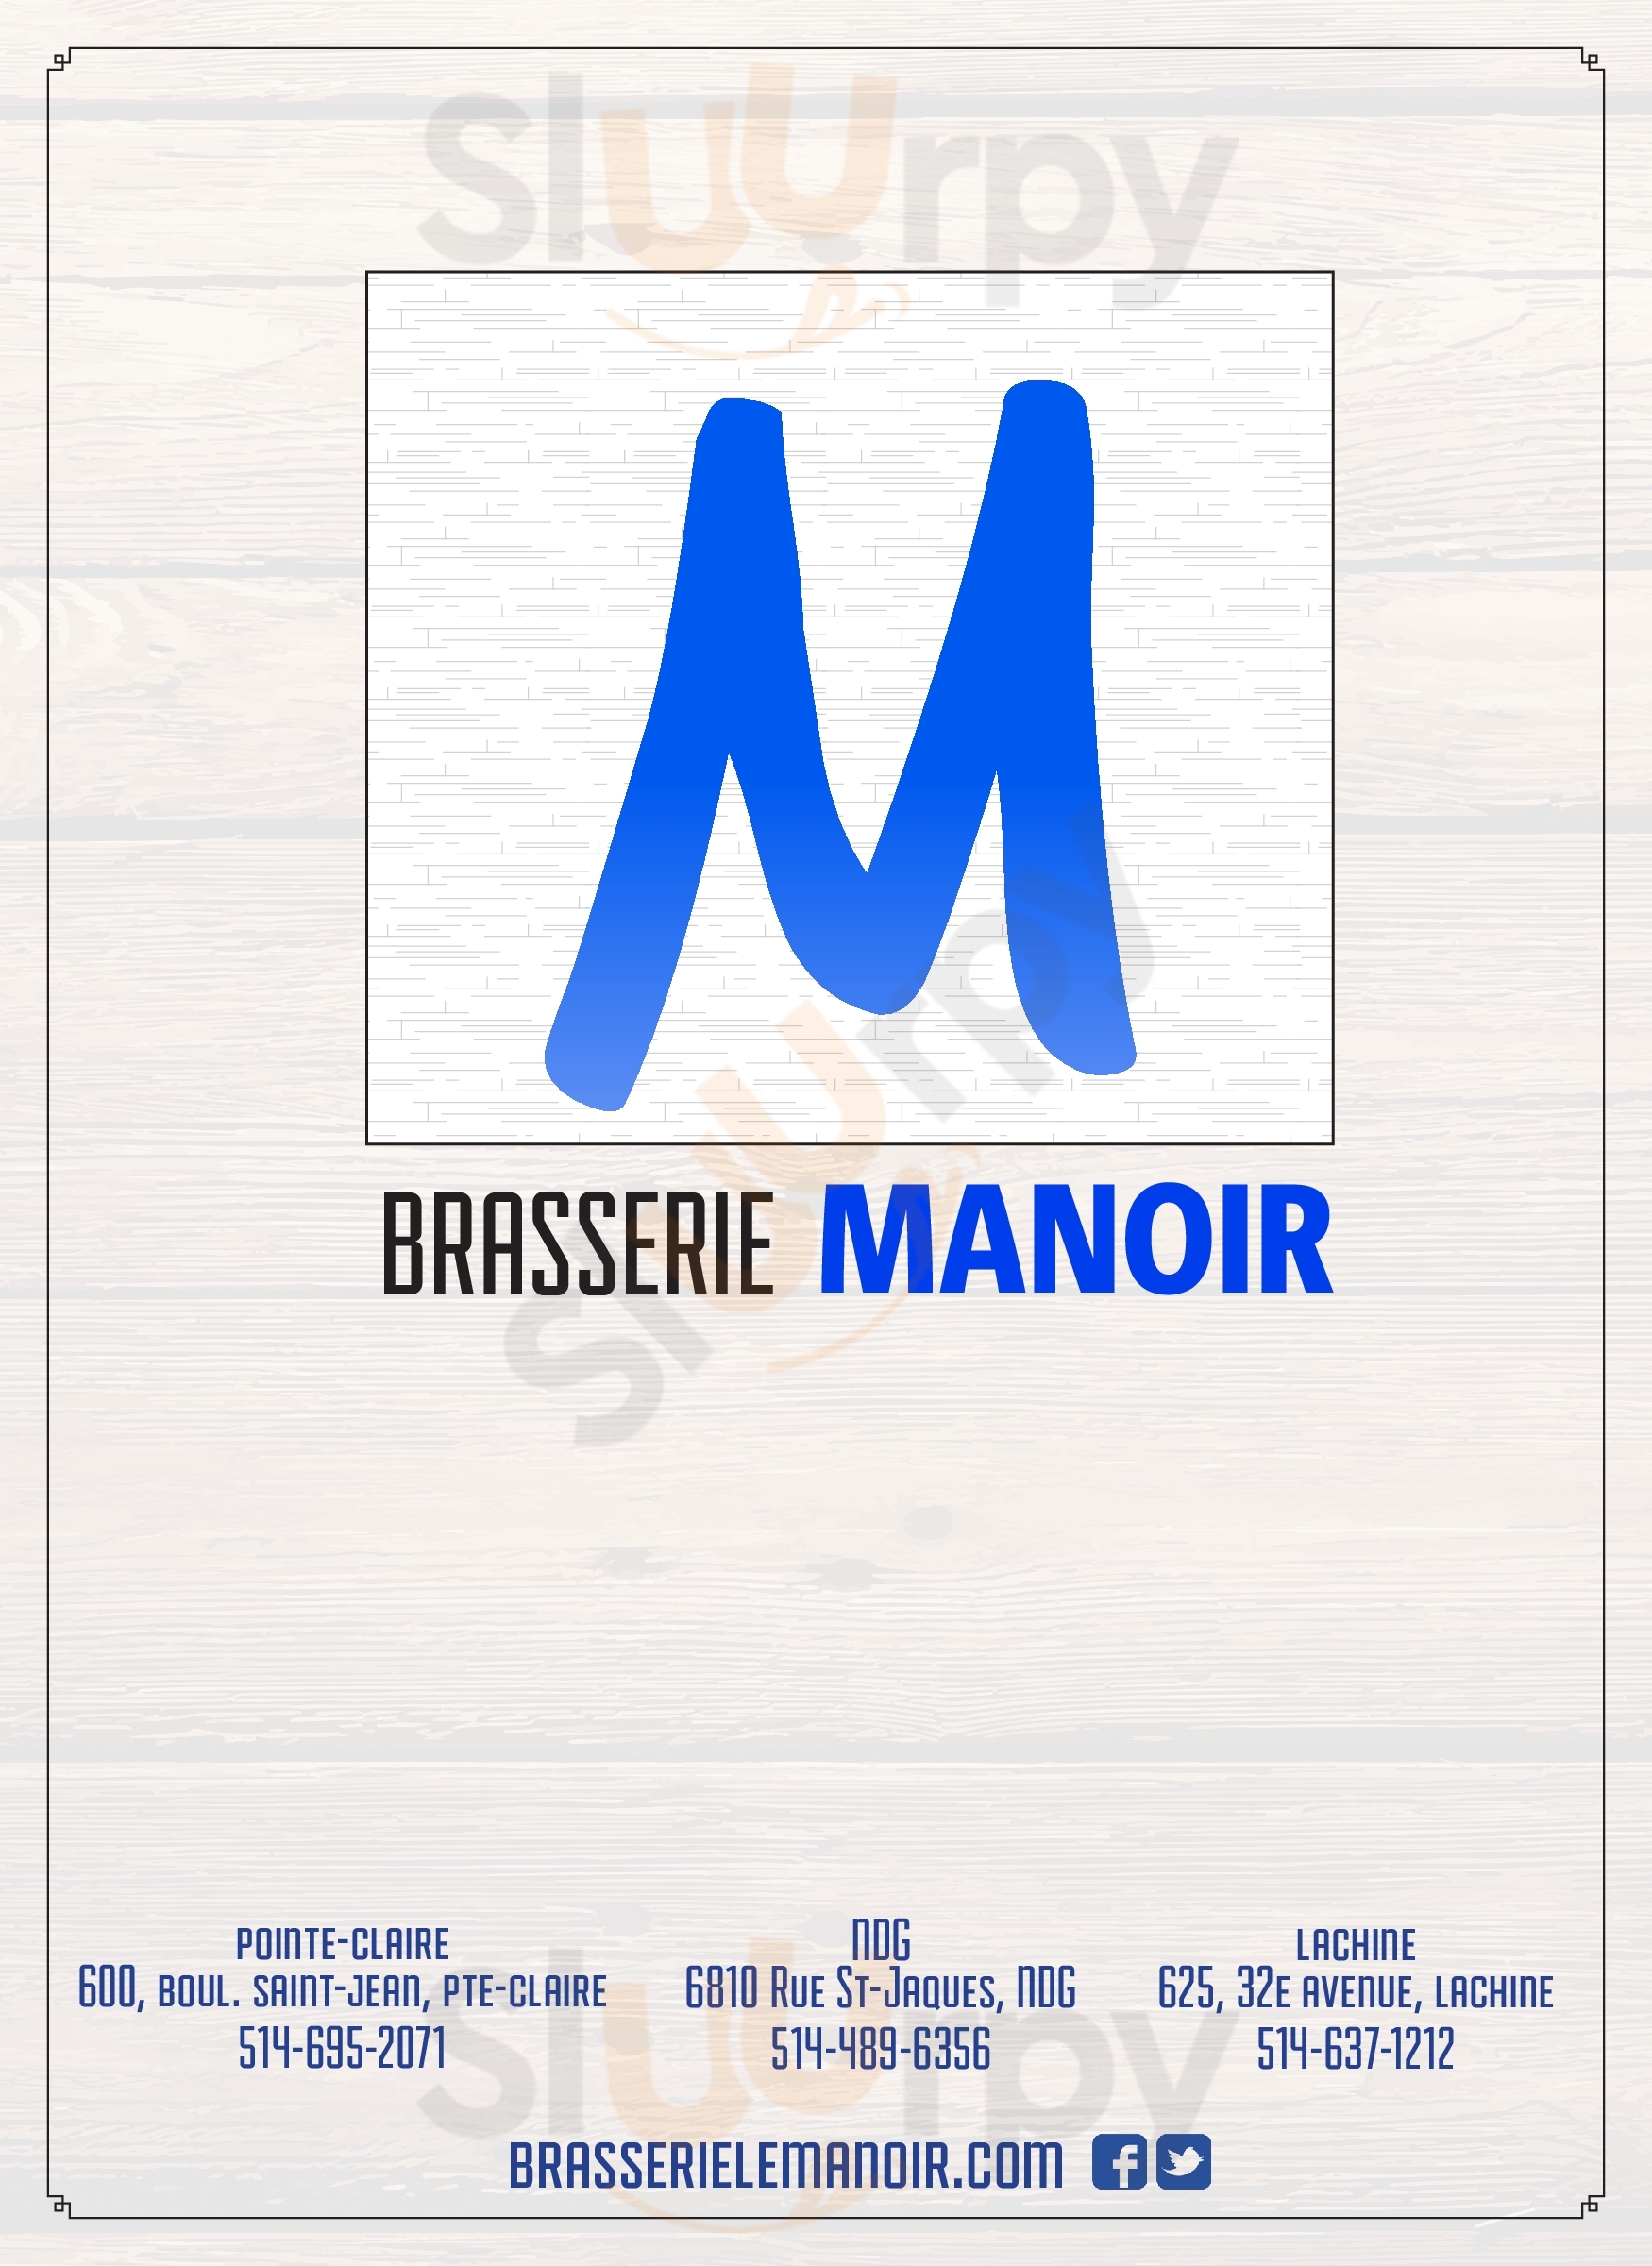 La Brasserie Le Manoir Gatineau Menu - 1